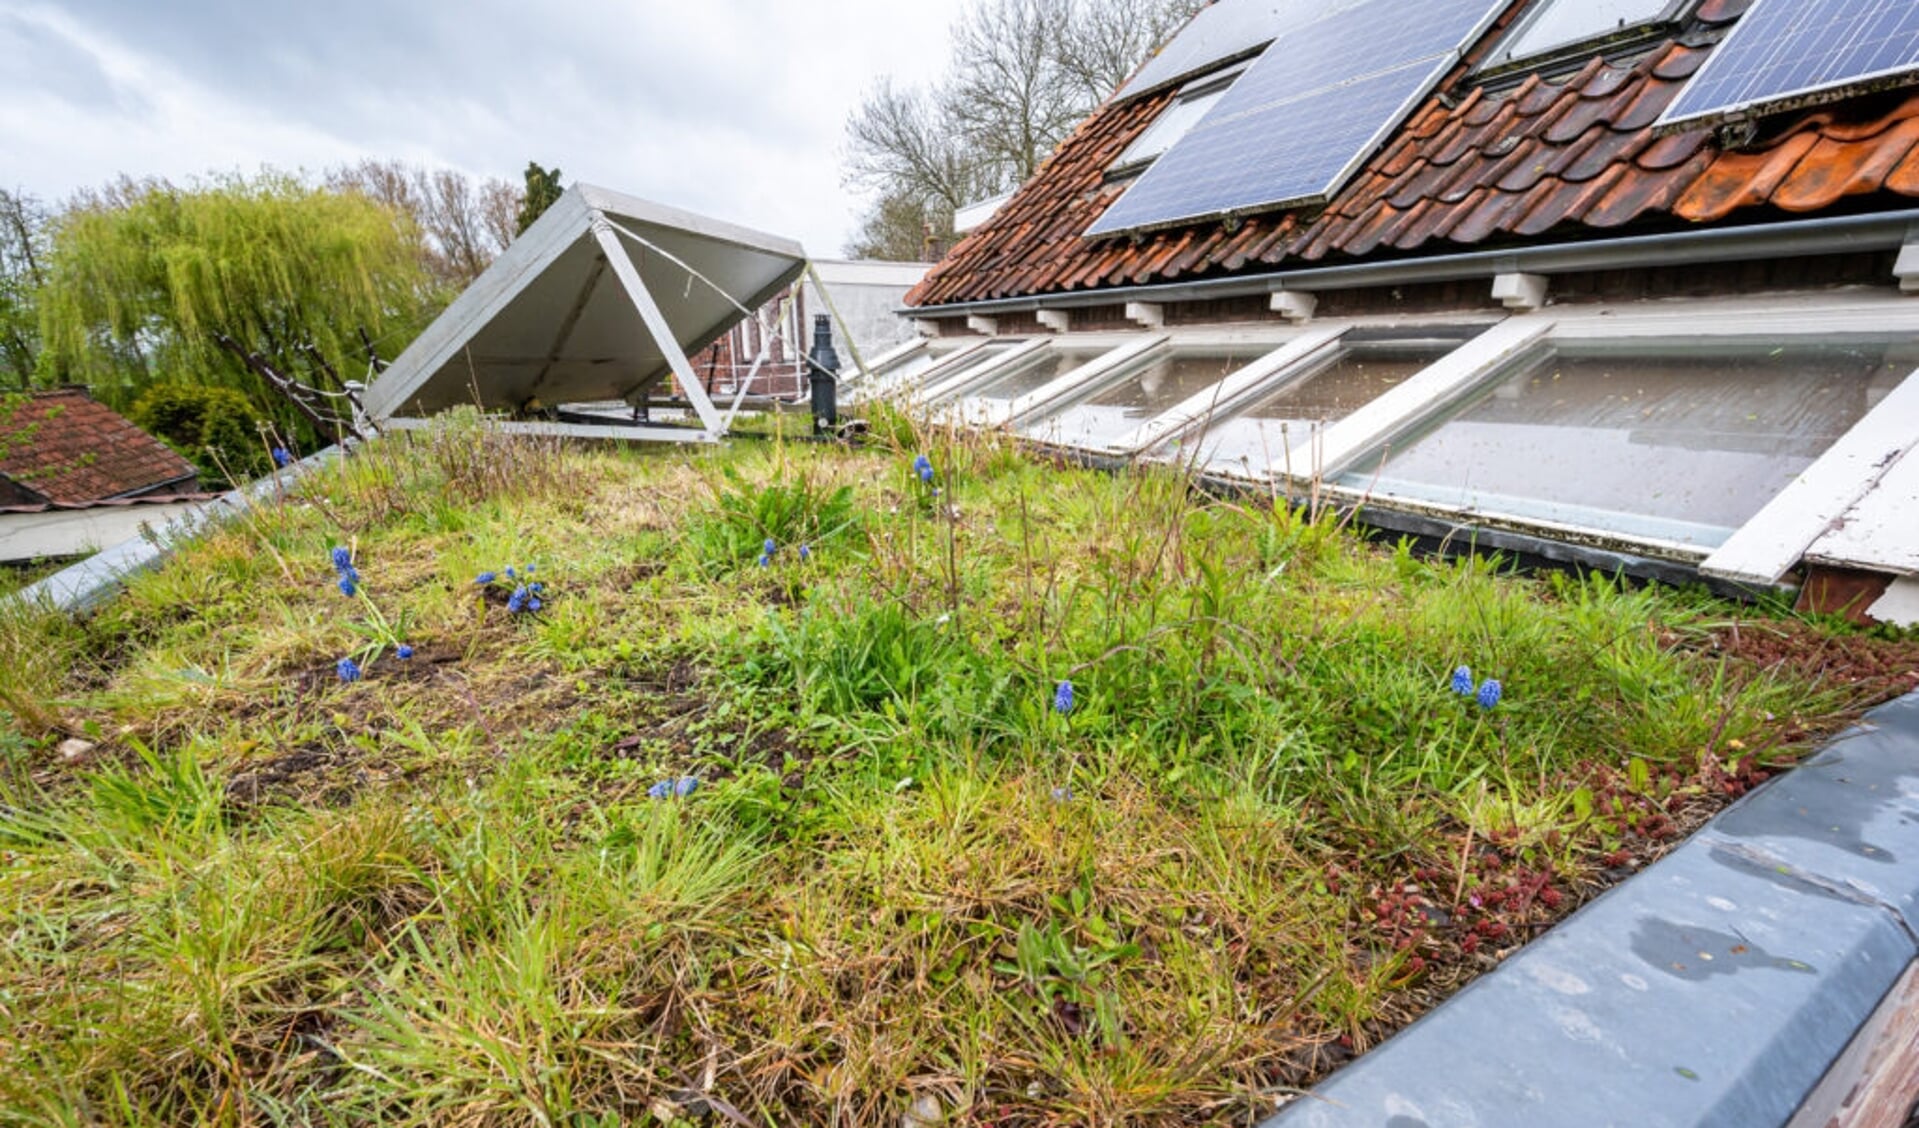 De sedumdaken van Leo Linnartz om meer groen in zijn tuin aan te brengen met subsidie van de gemeente (Foto: Wim van Vossen).